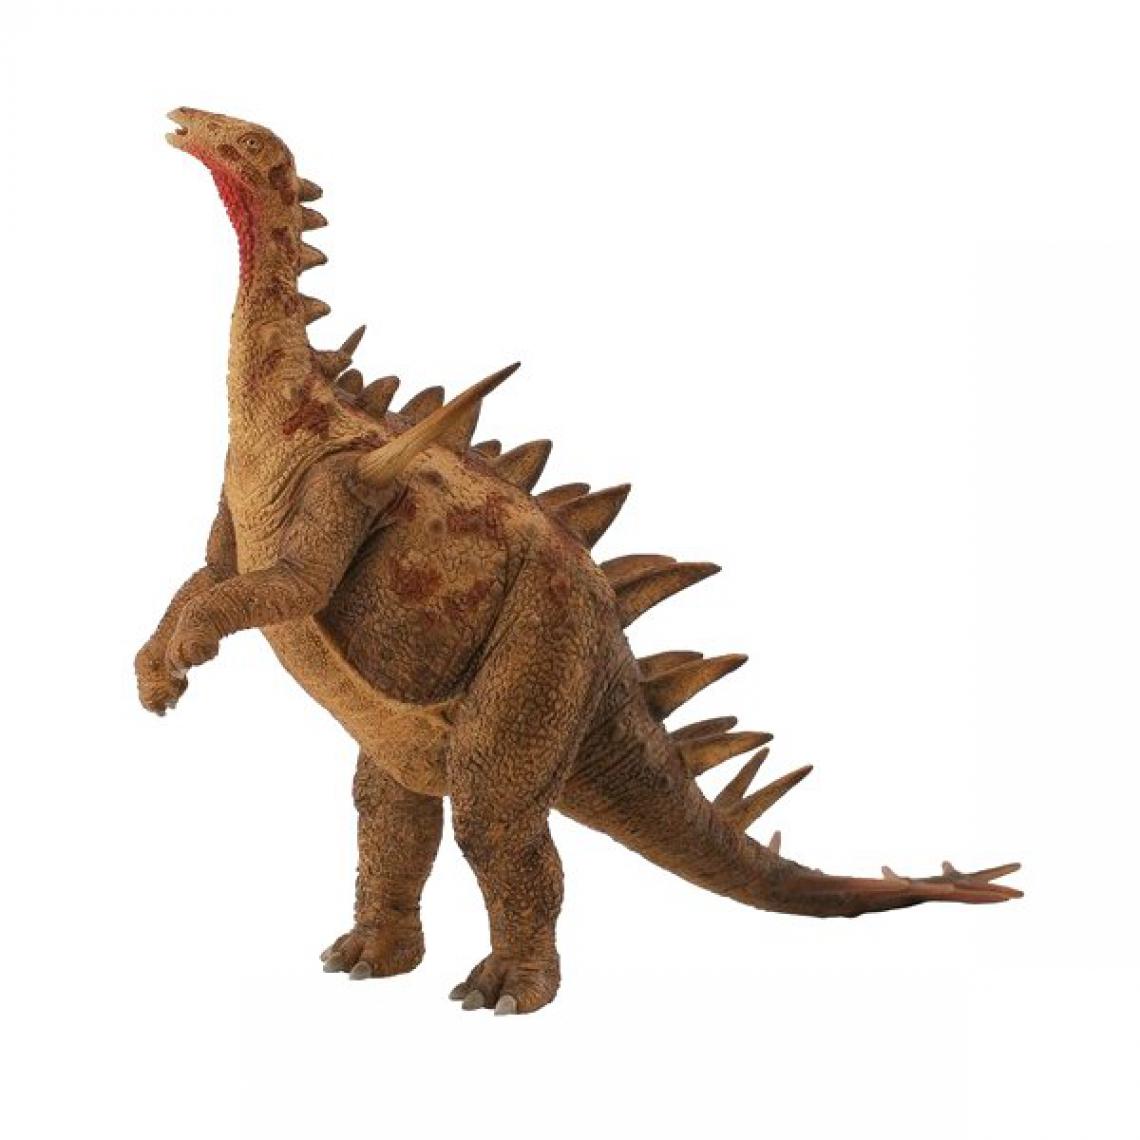 Figurines Collecta - Figurine Dinosaure : Deluxe 1 - Dinosaures